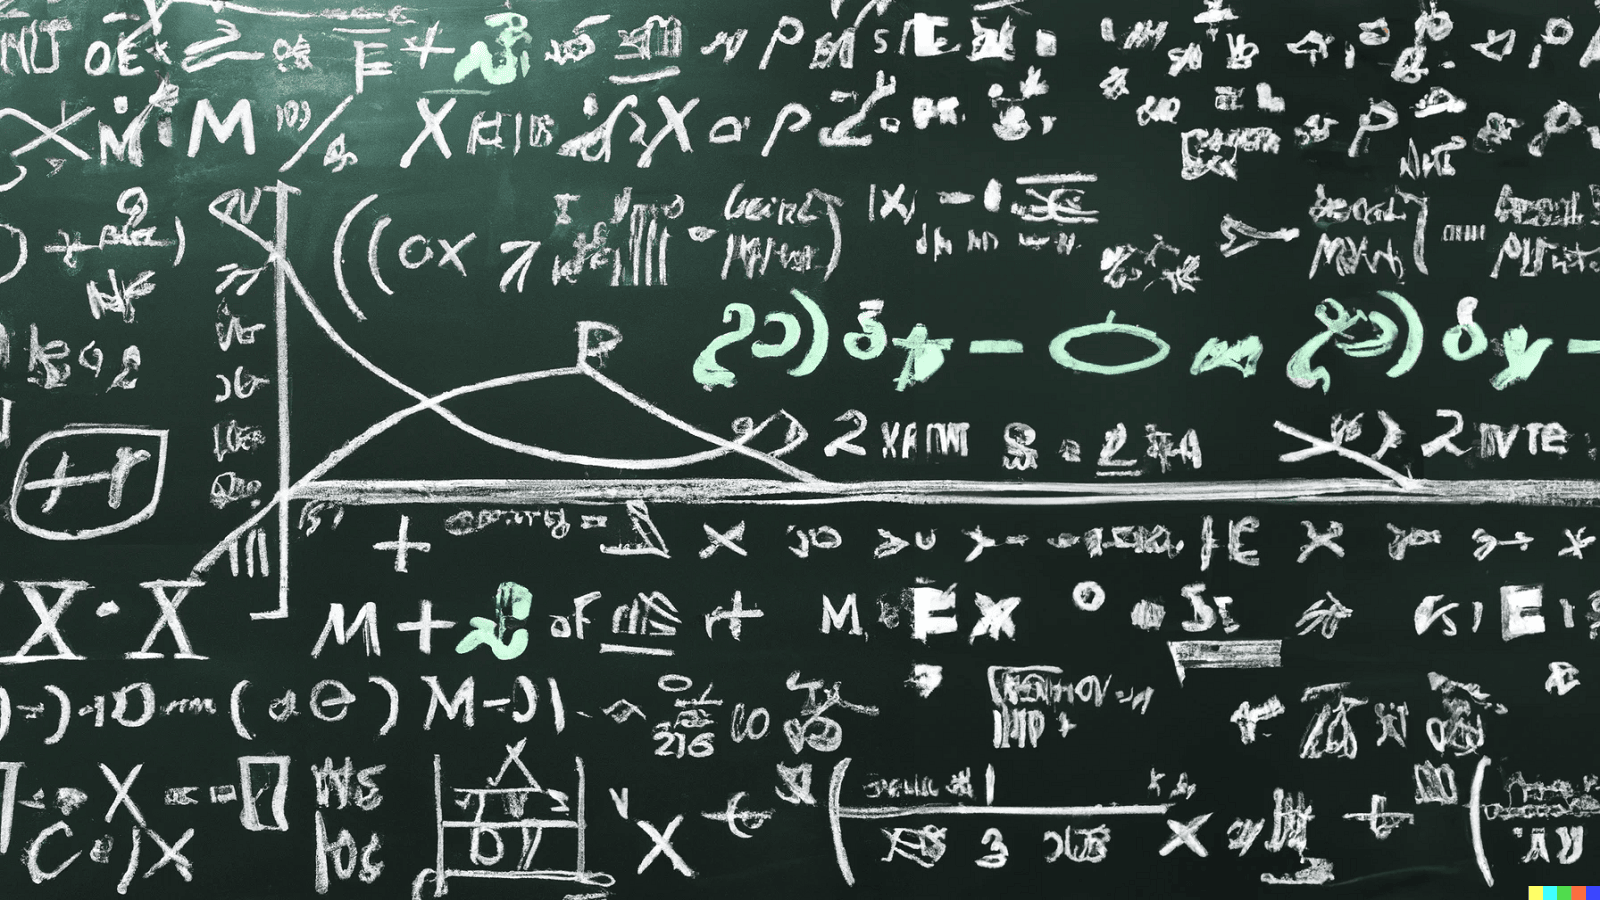 równania matematyczne zapisane na szkolnej tablicy białą kredą